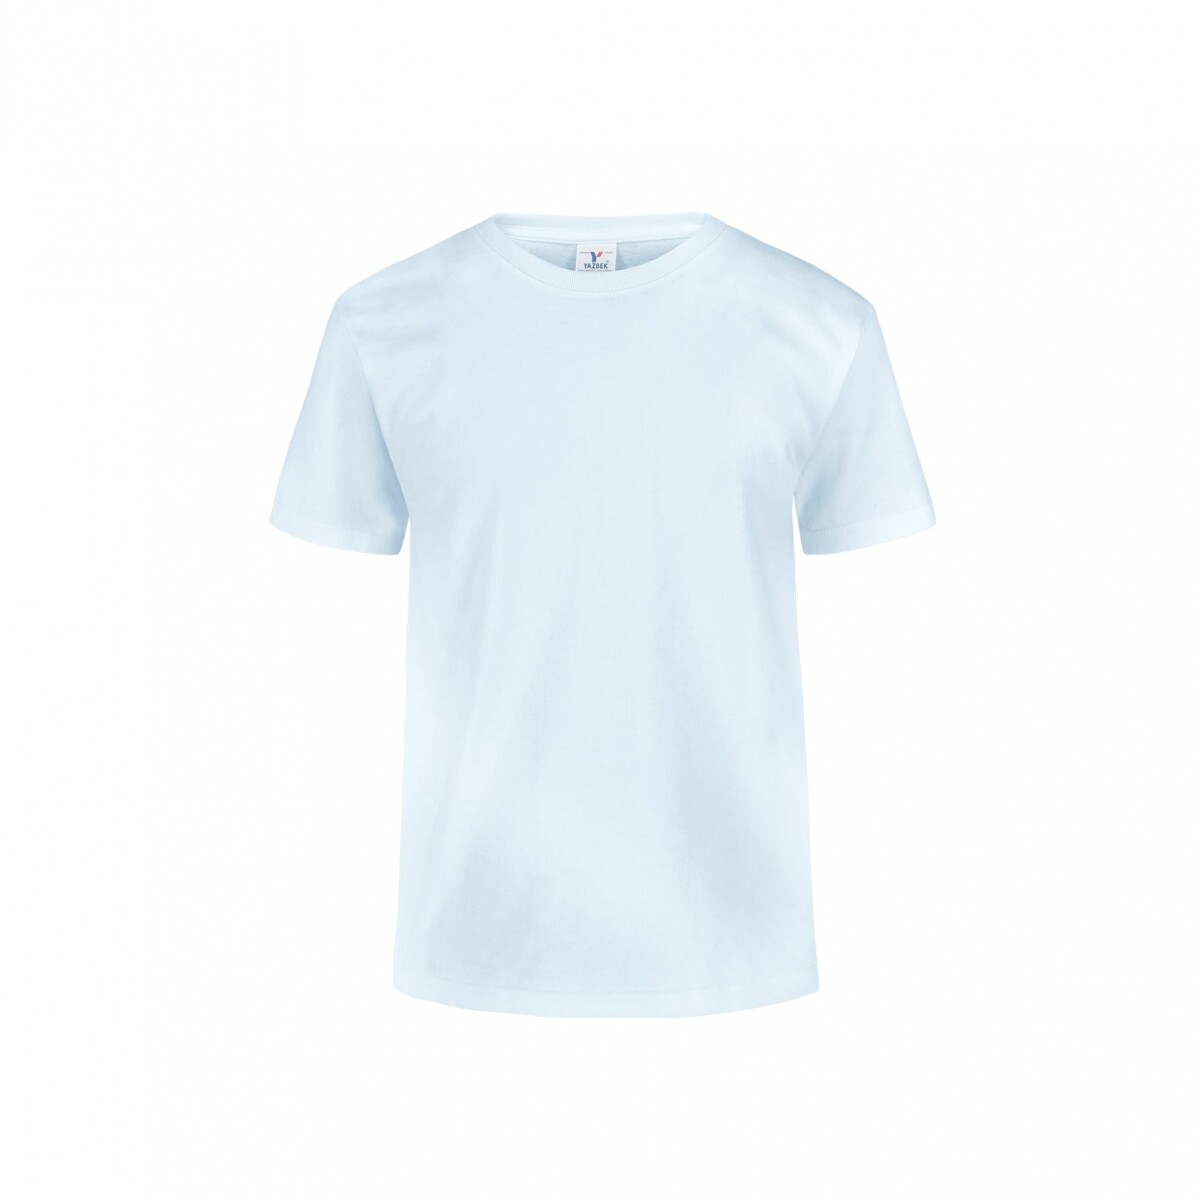 Camiseta a la base niño - Blanco 